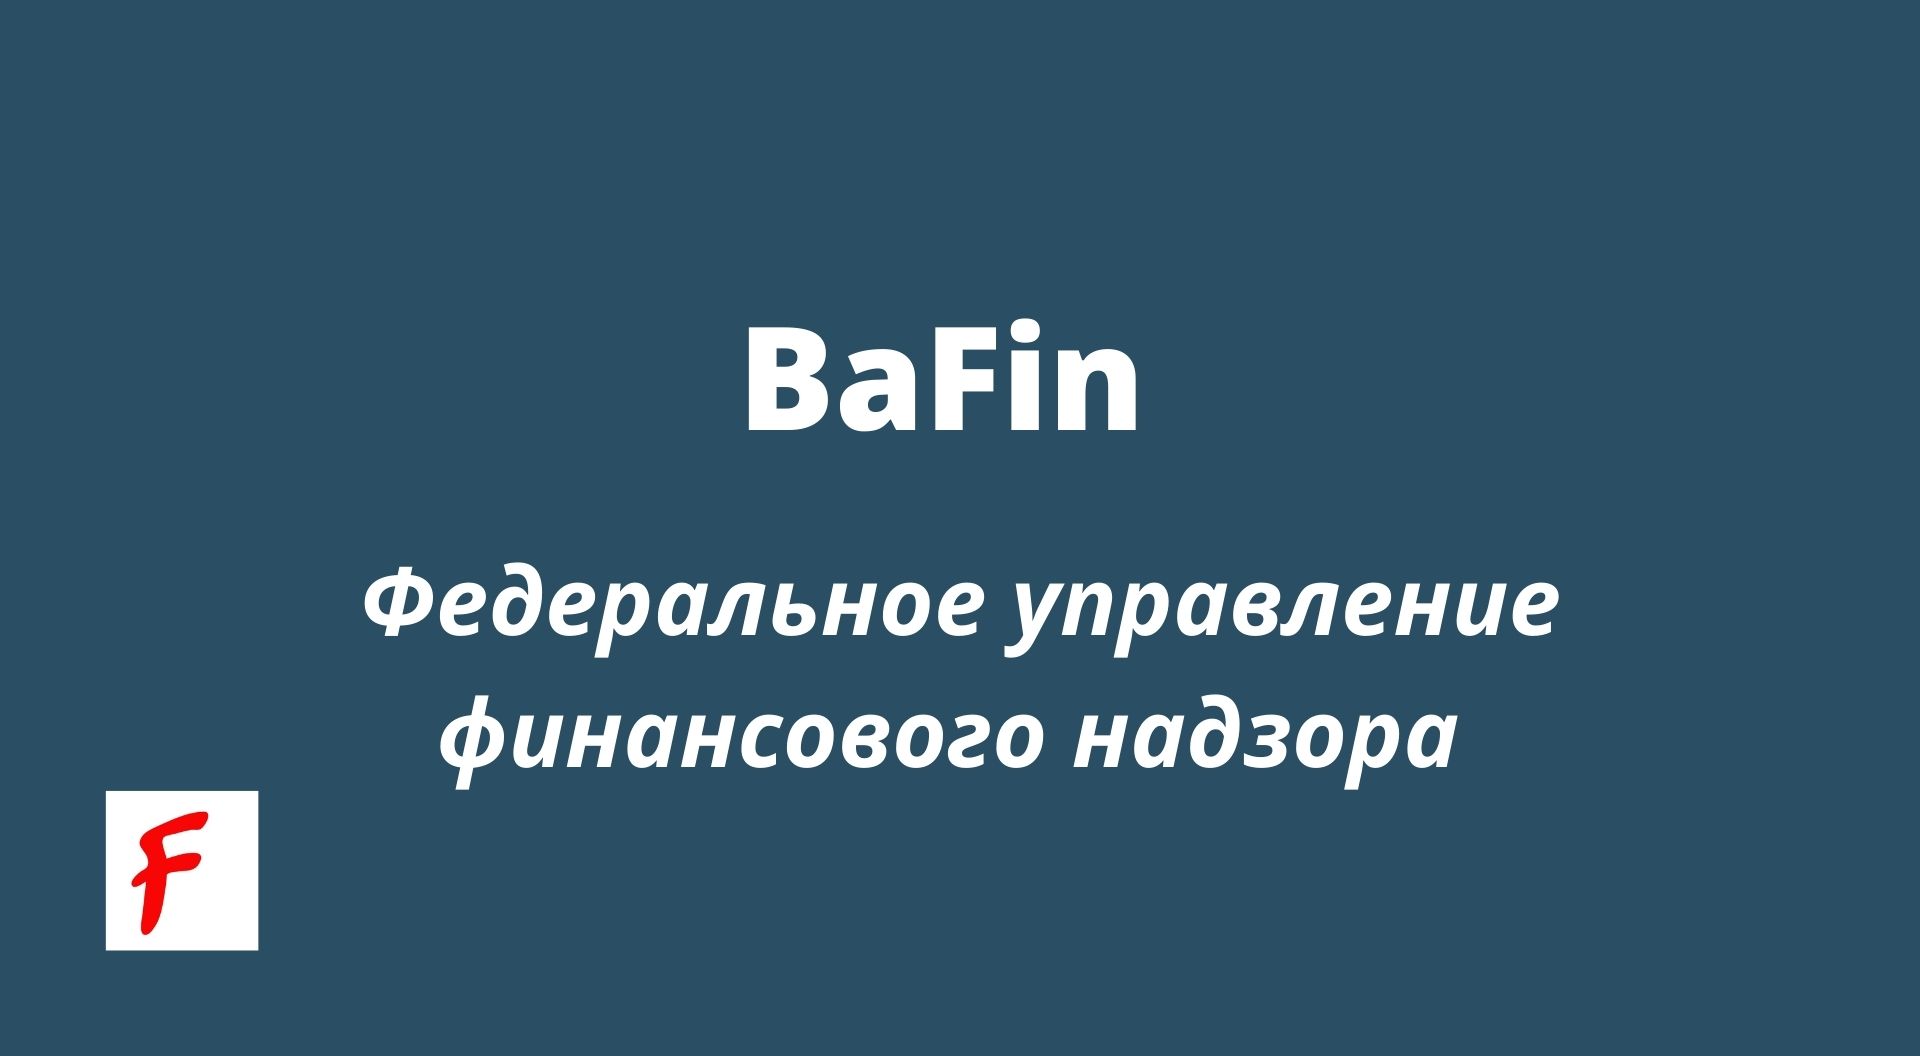 BaFin — Федеральное управление финансового надзора [Среднесрочные цели]